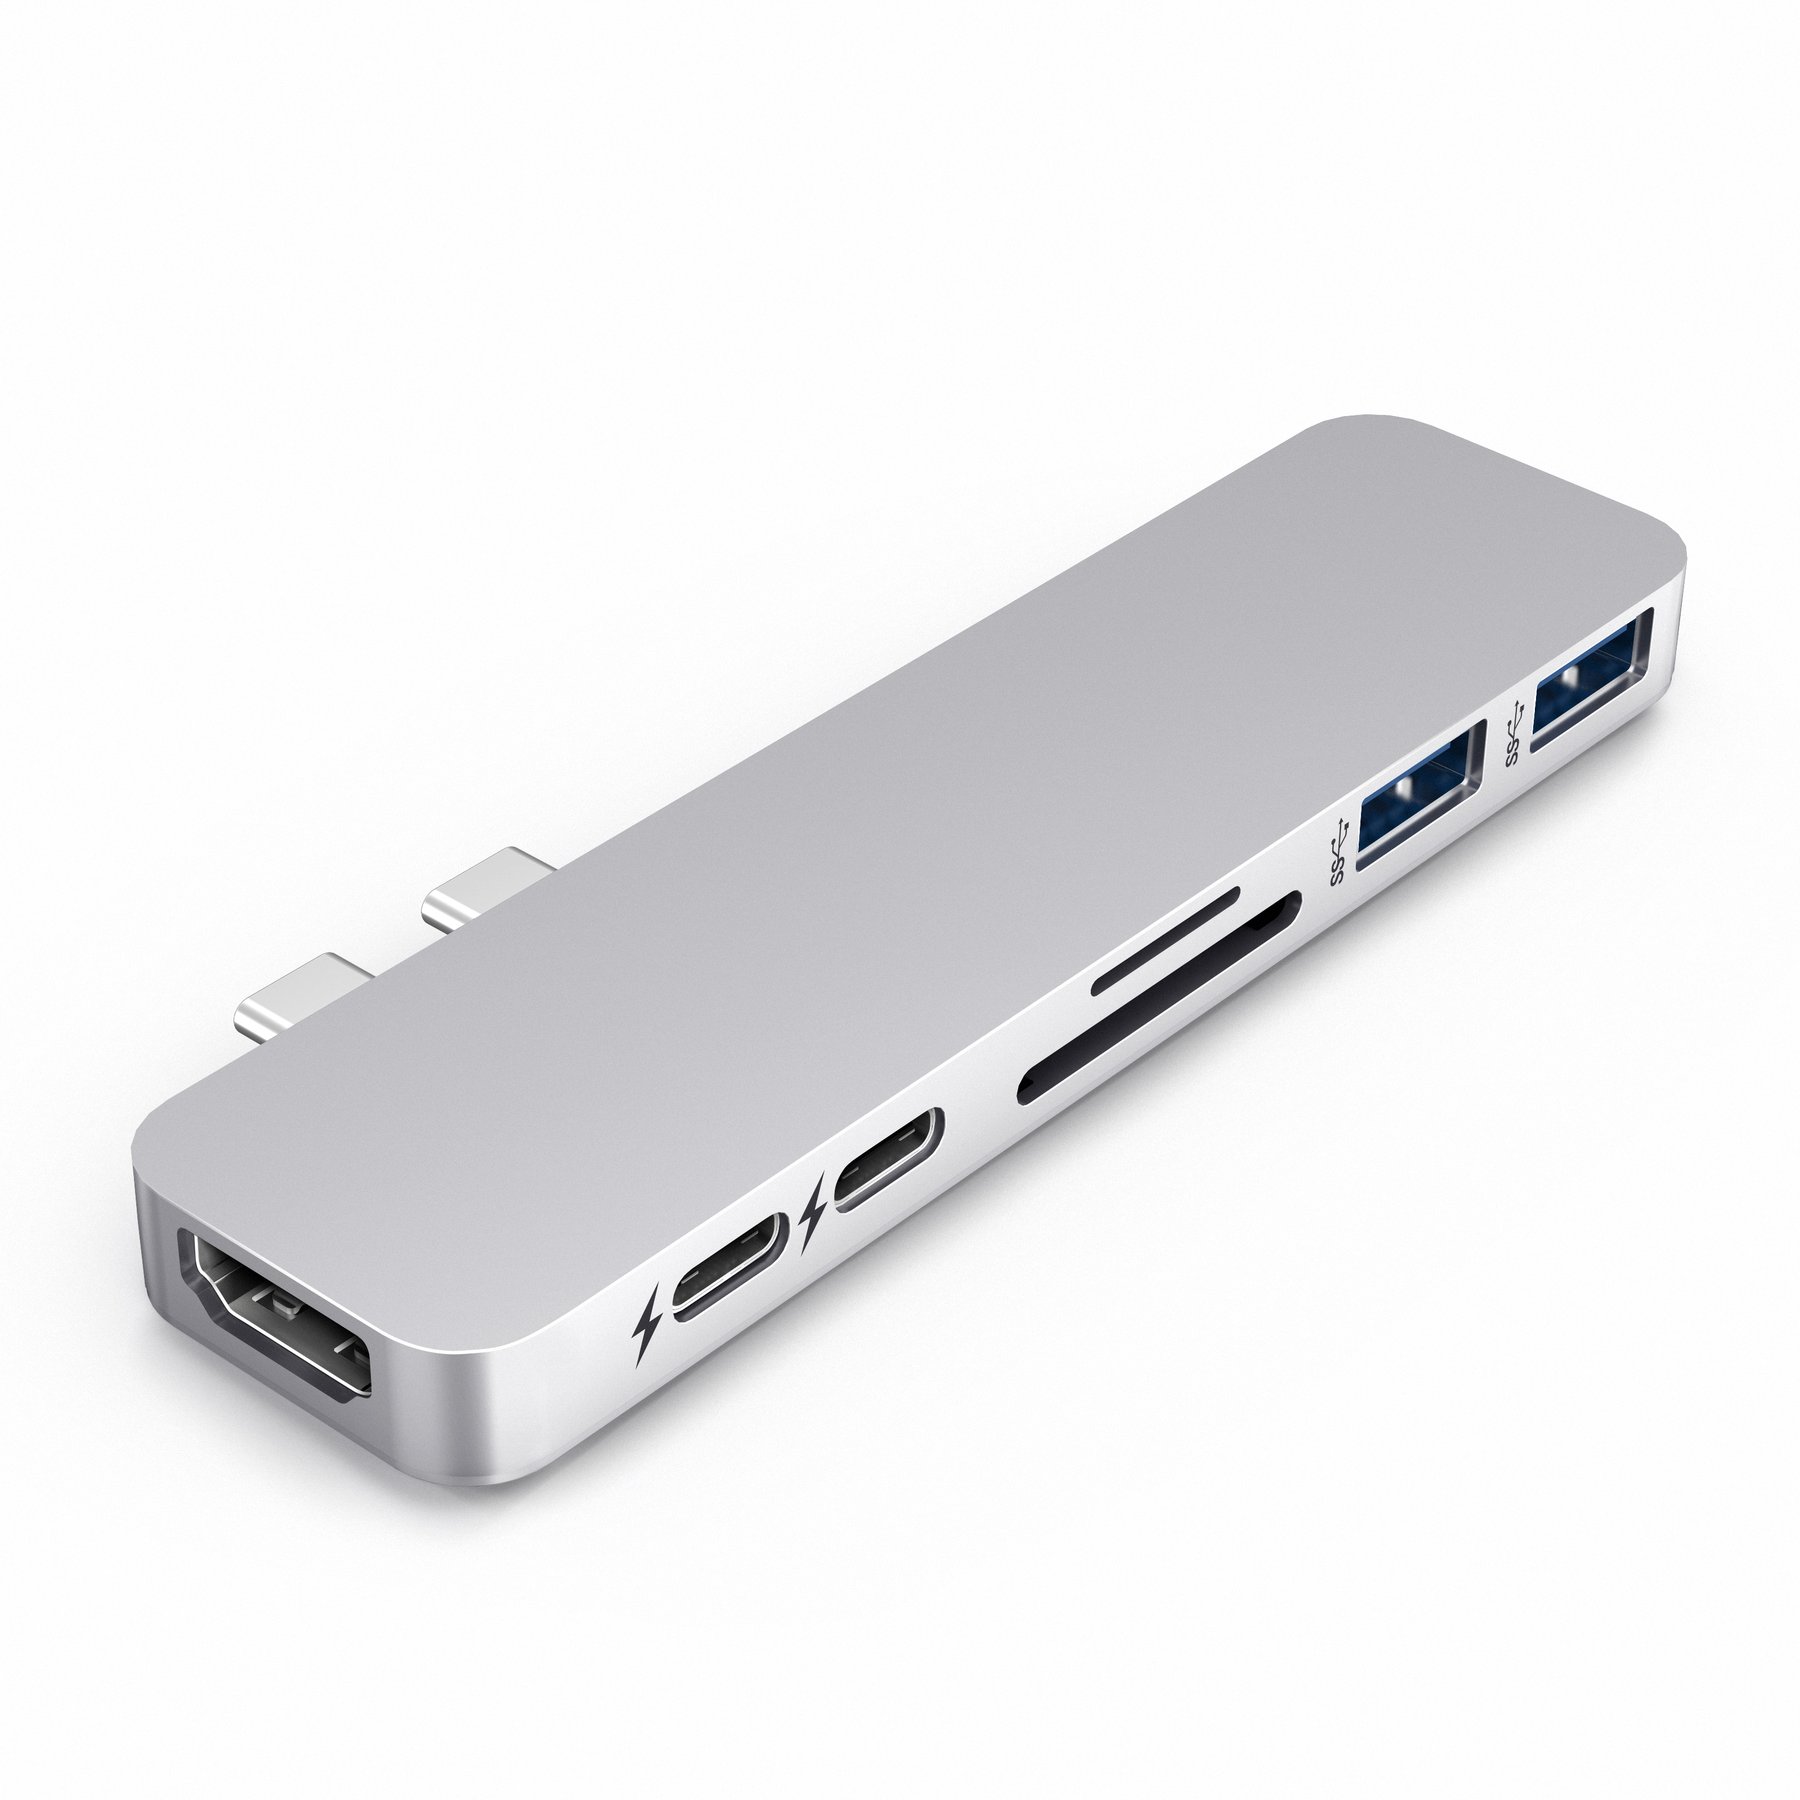 CỔNG CHUYỂN HYPERDRIVE DUO 7-IN-2 USB-C HUB FOR MACBOOK PRO/AIR GN28B - hàng chính hãng